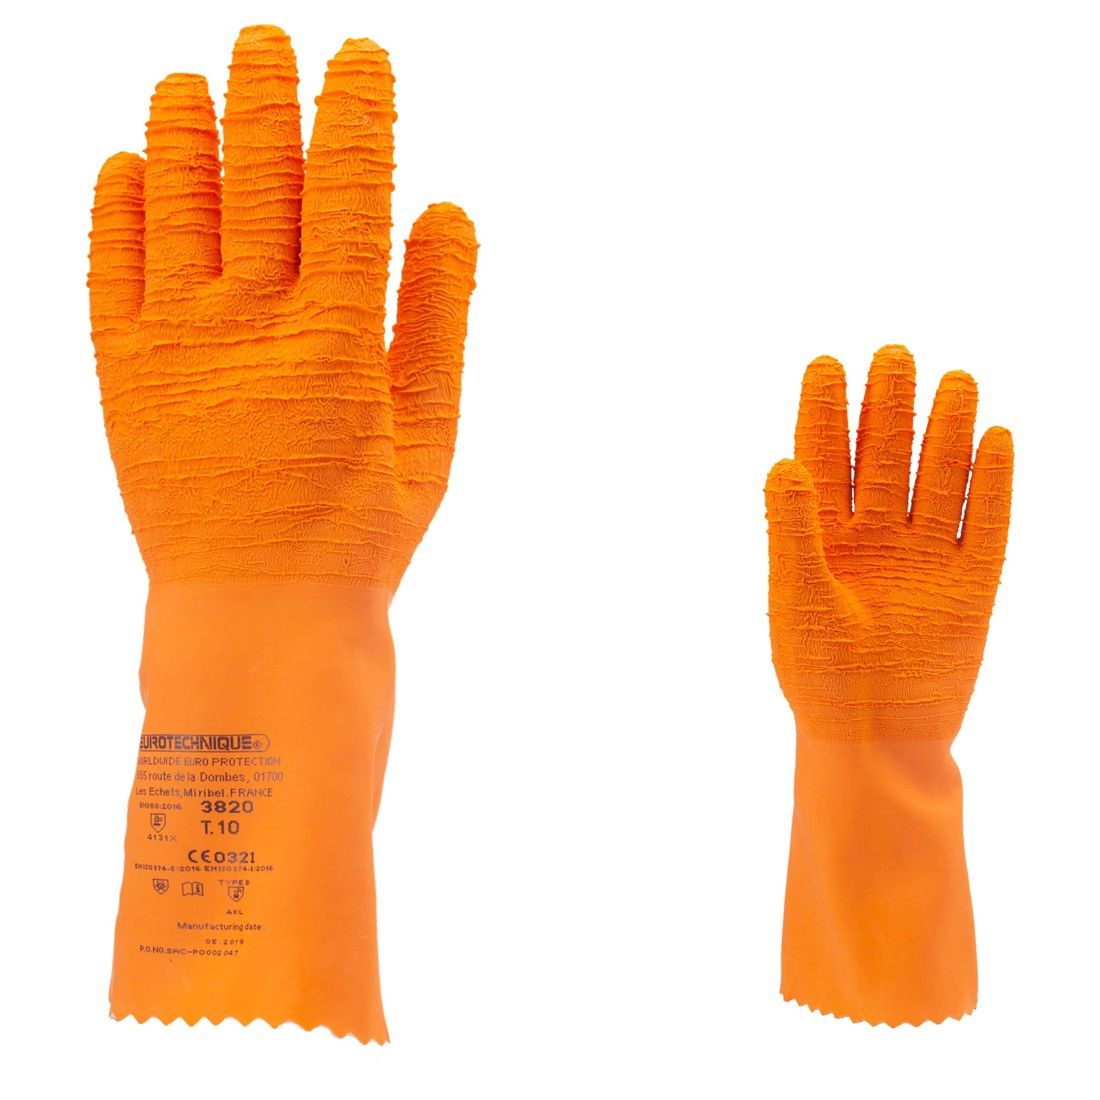 Coverguard - Gants de protection chimique orange en latex crêpé EUROCHEM  L3820 (Pack de 12)